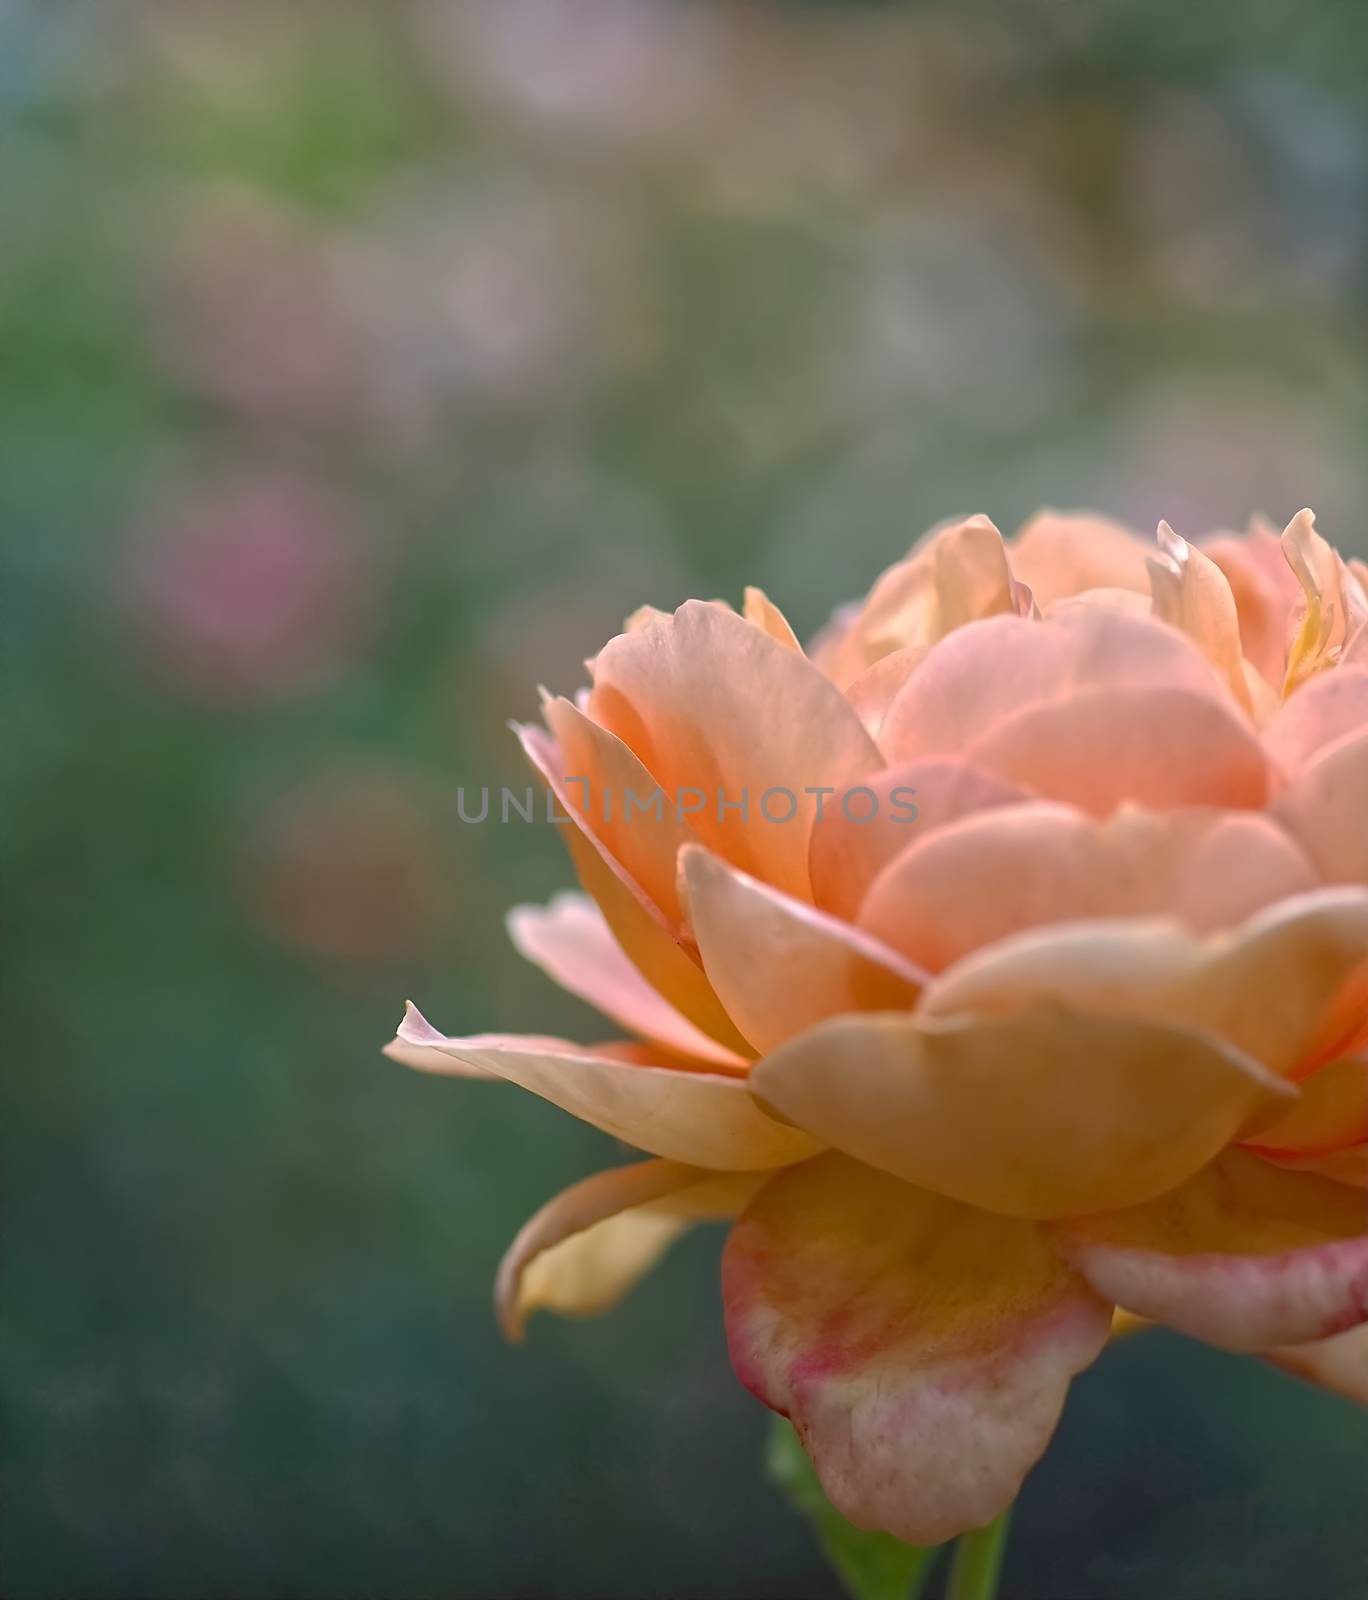 Beautiful macro of a blooming orange rose rose by Stimmungsbilder